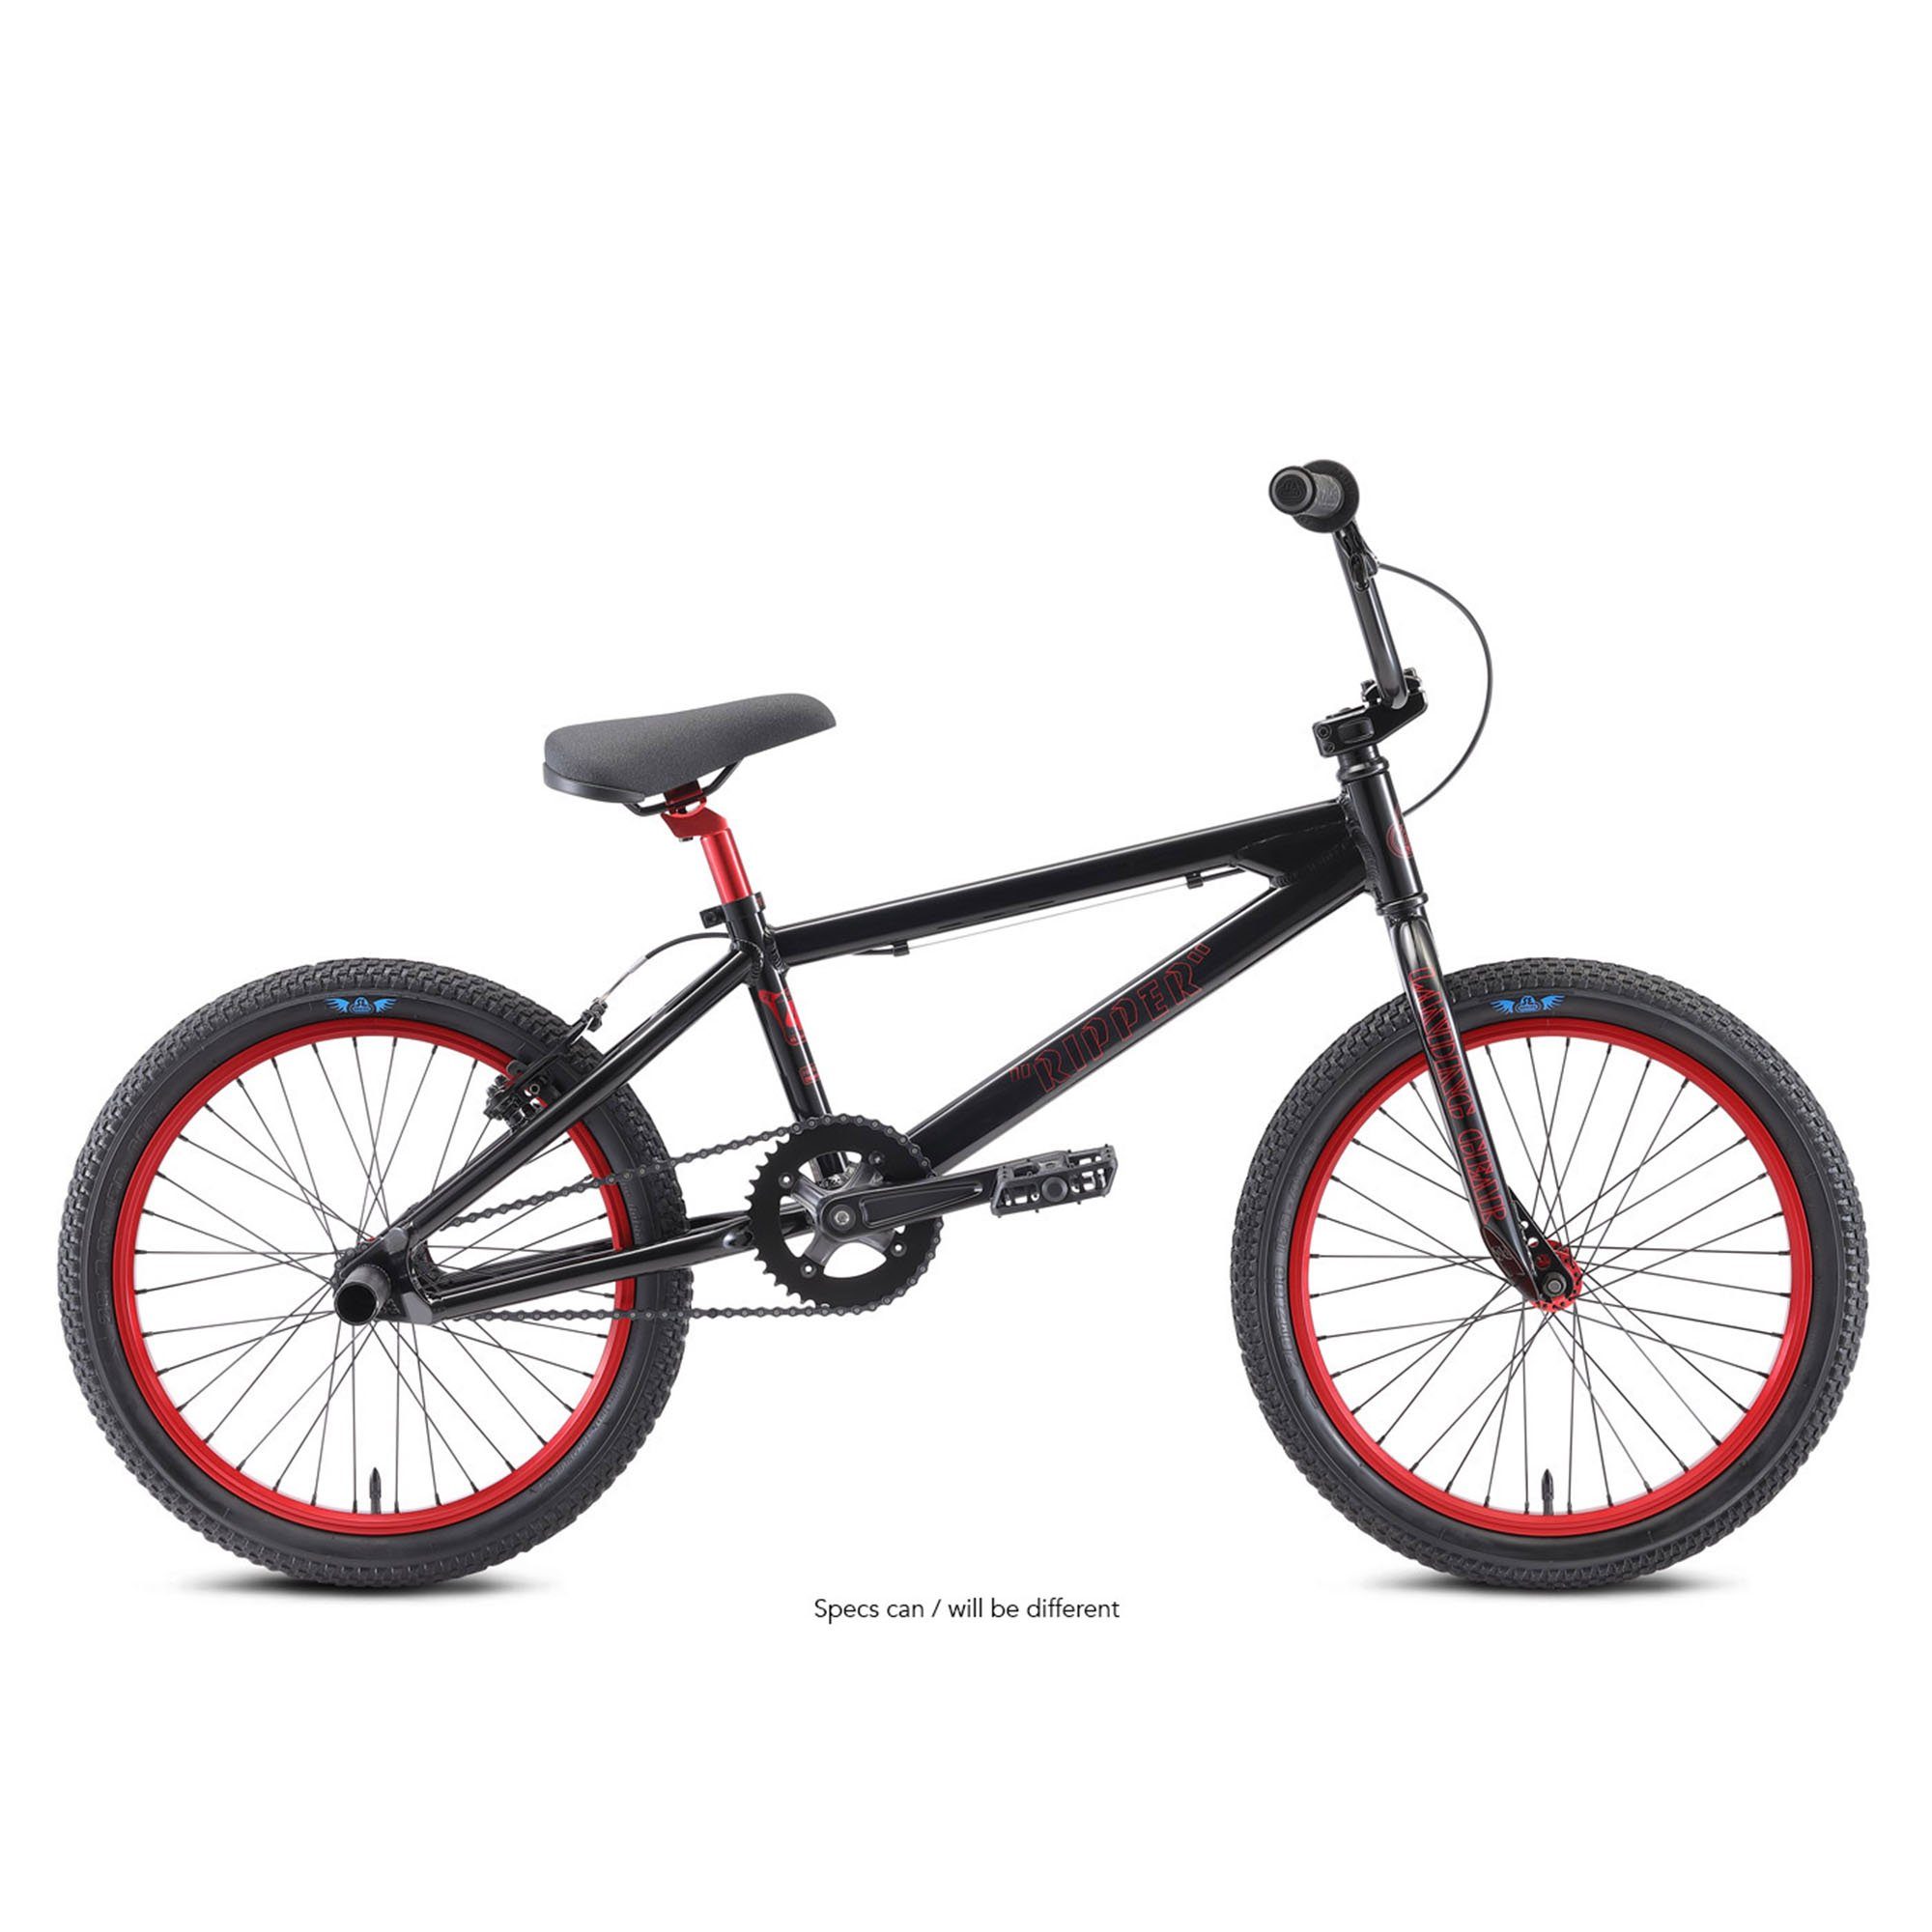 SE Bikes BMX-Rad Ripper, BMX 1 20" 140-165cm Jugendliche Fahrrad stealth mode Rad Schaltung, black Ripper Freestyle ohne Erwachsene Gang